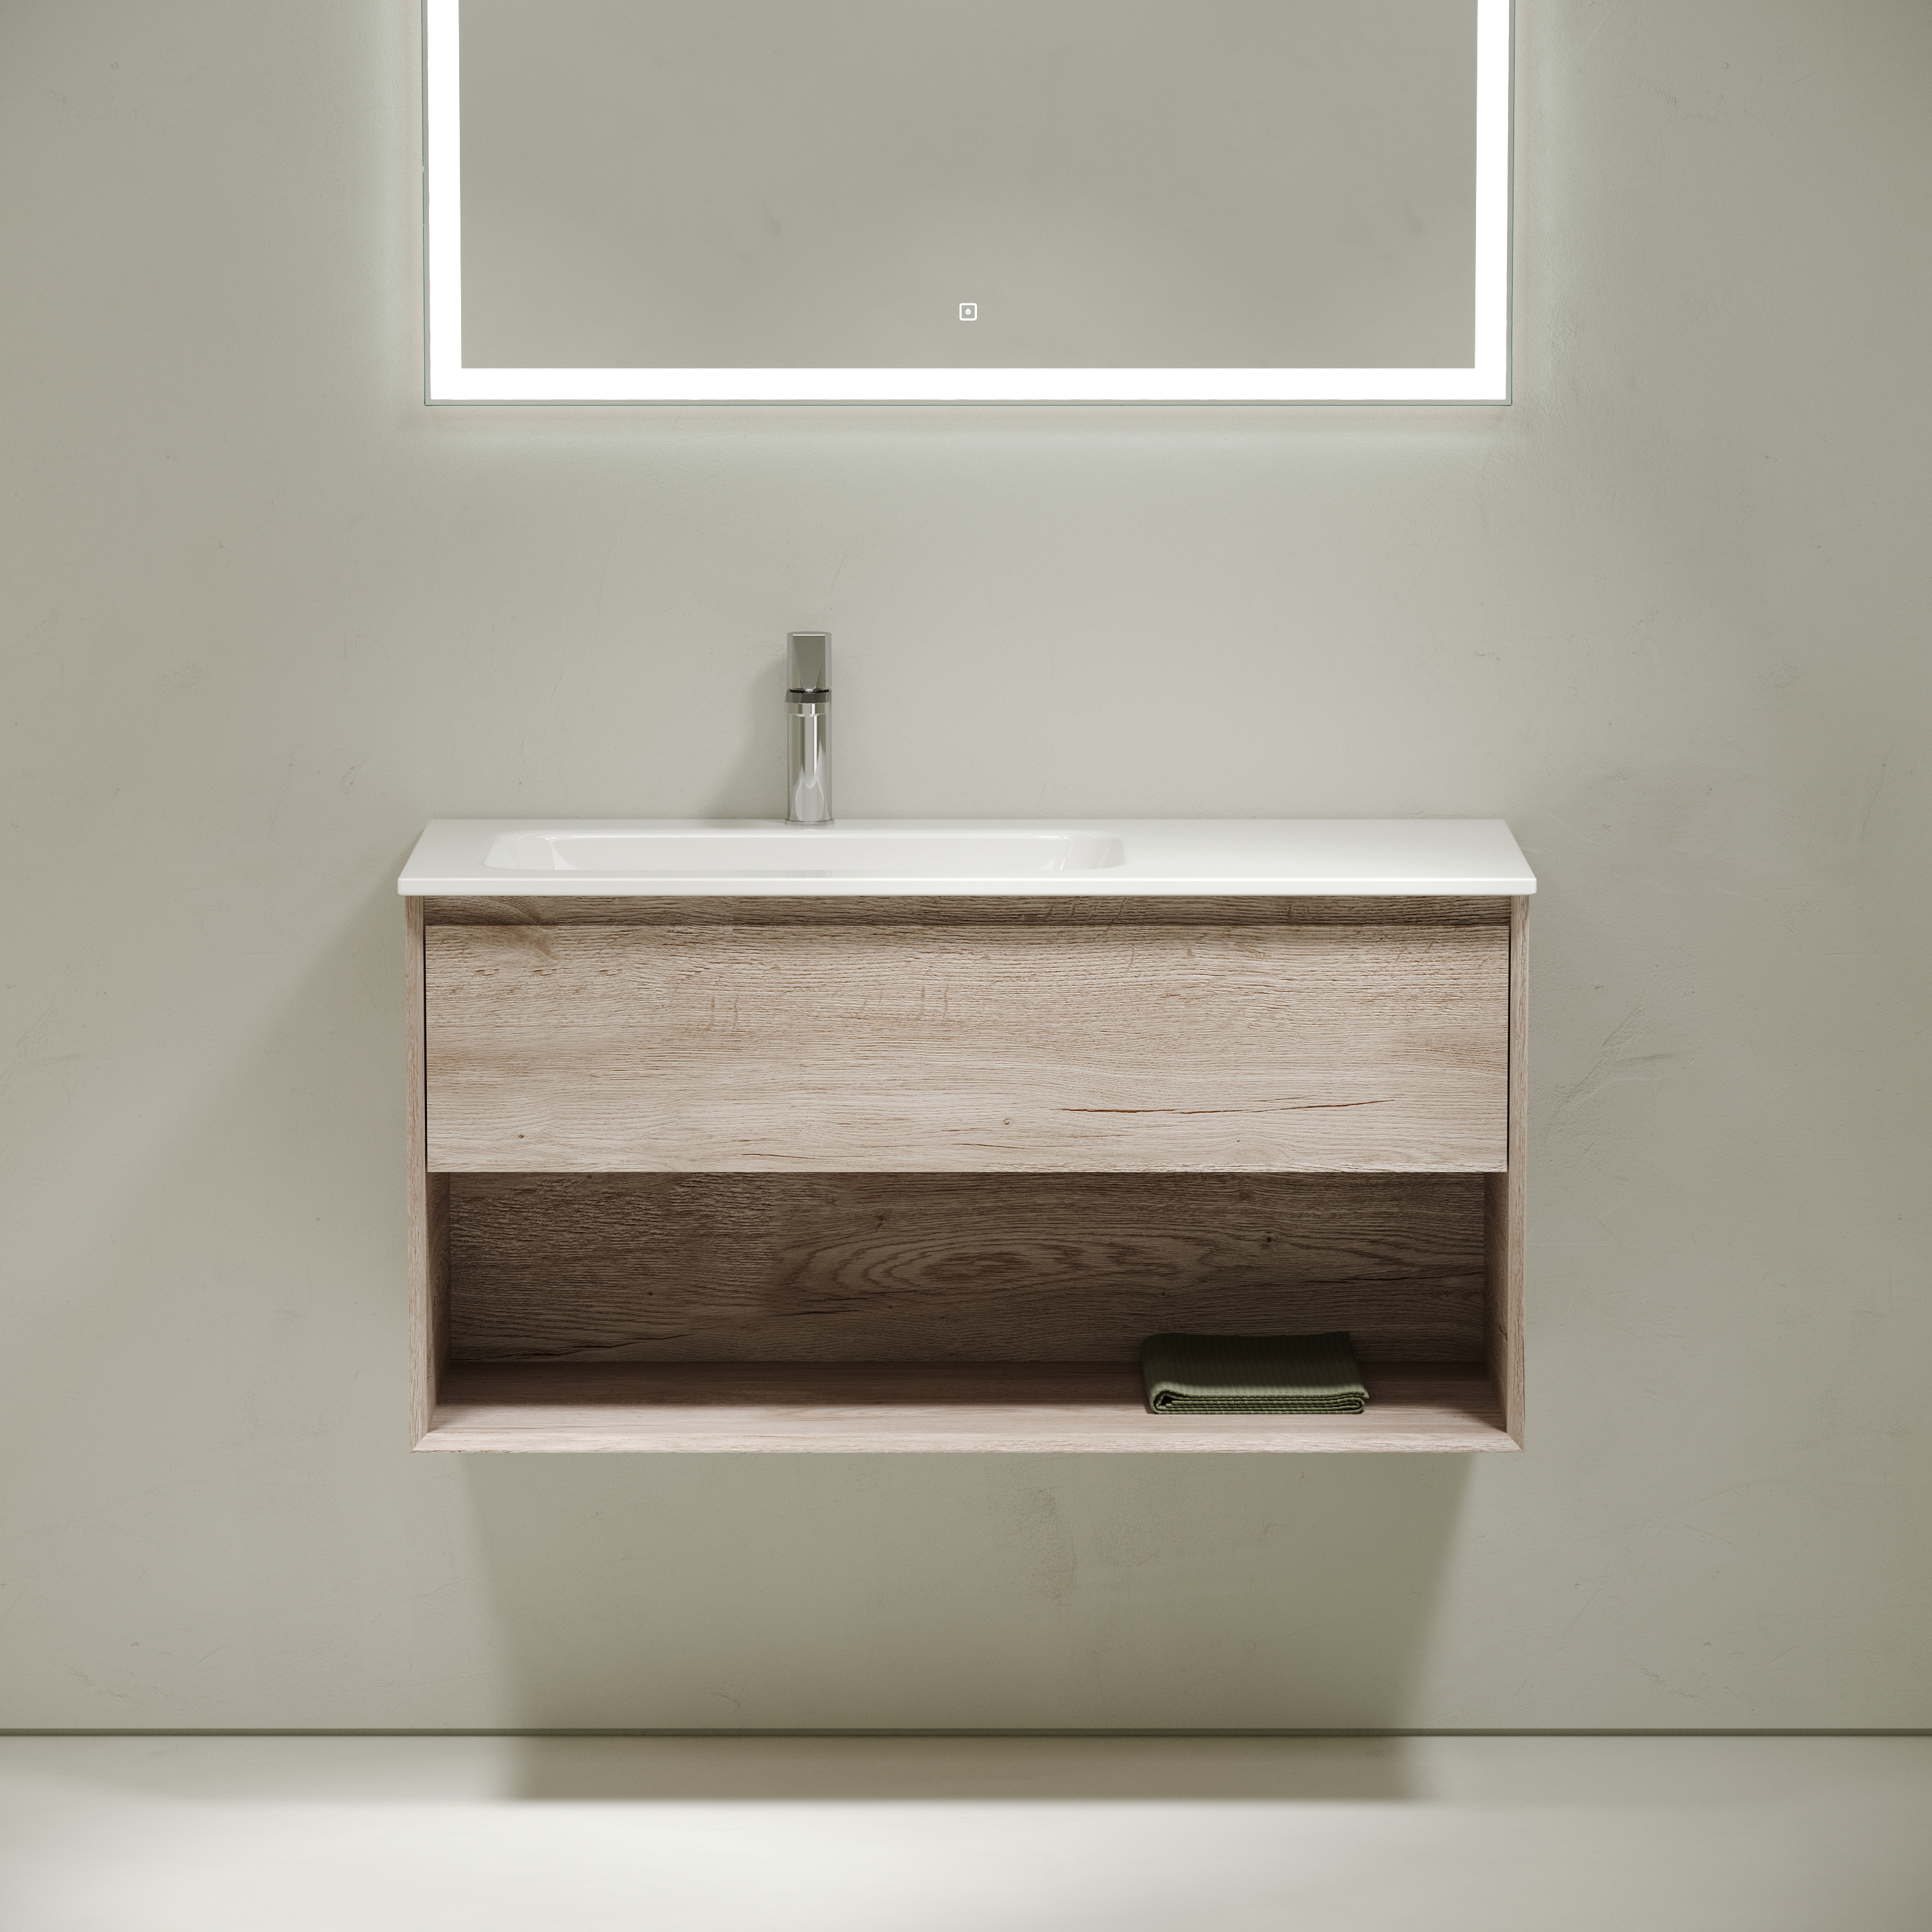 Мебель для ванной комнаты Sancos Marmi 1.0 100 см дуб галифакс натуральный, левая, цвет коричневый MR1.0100LEG - фото 3